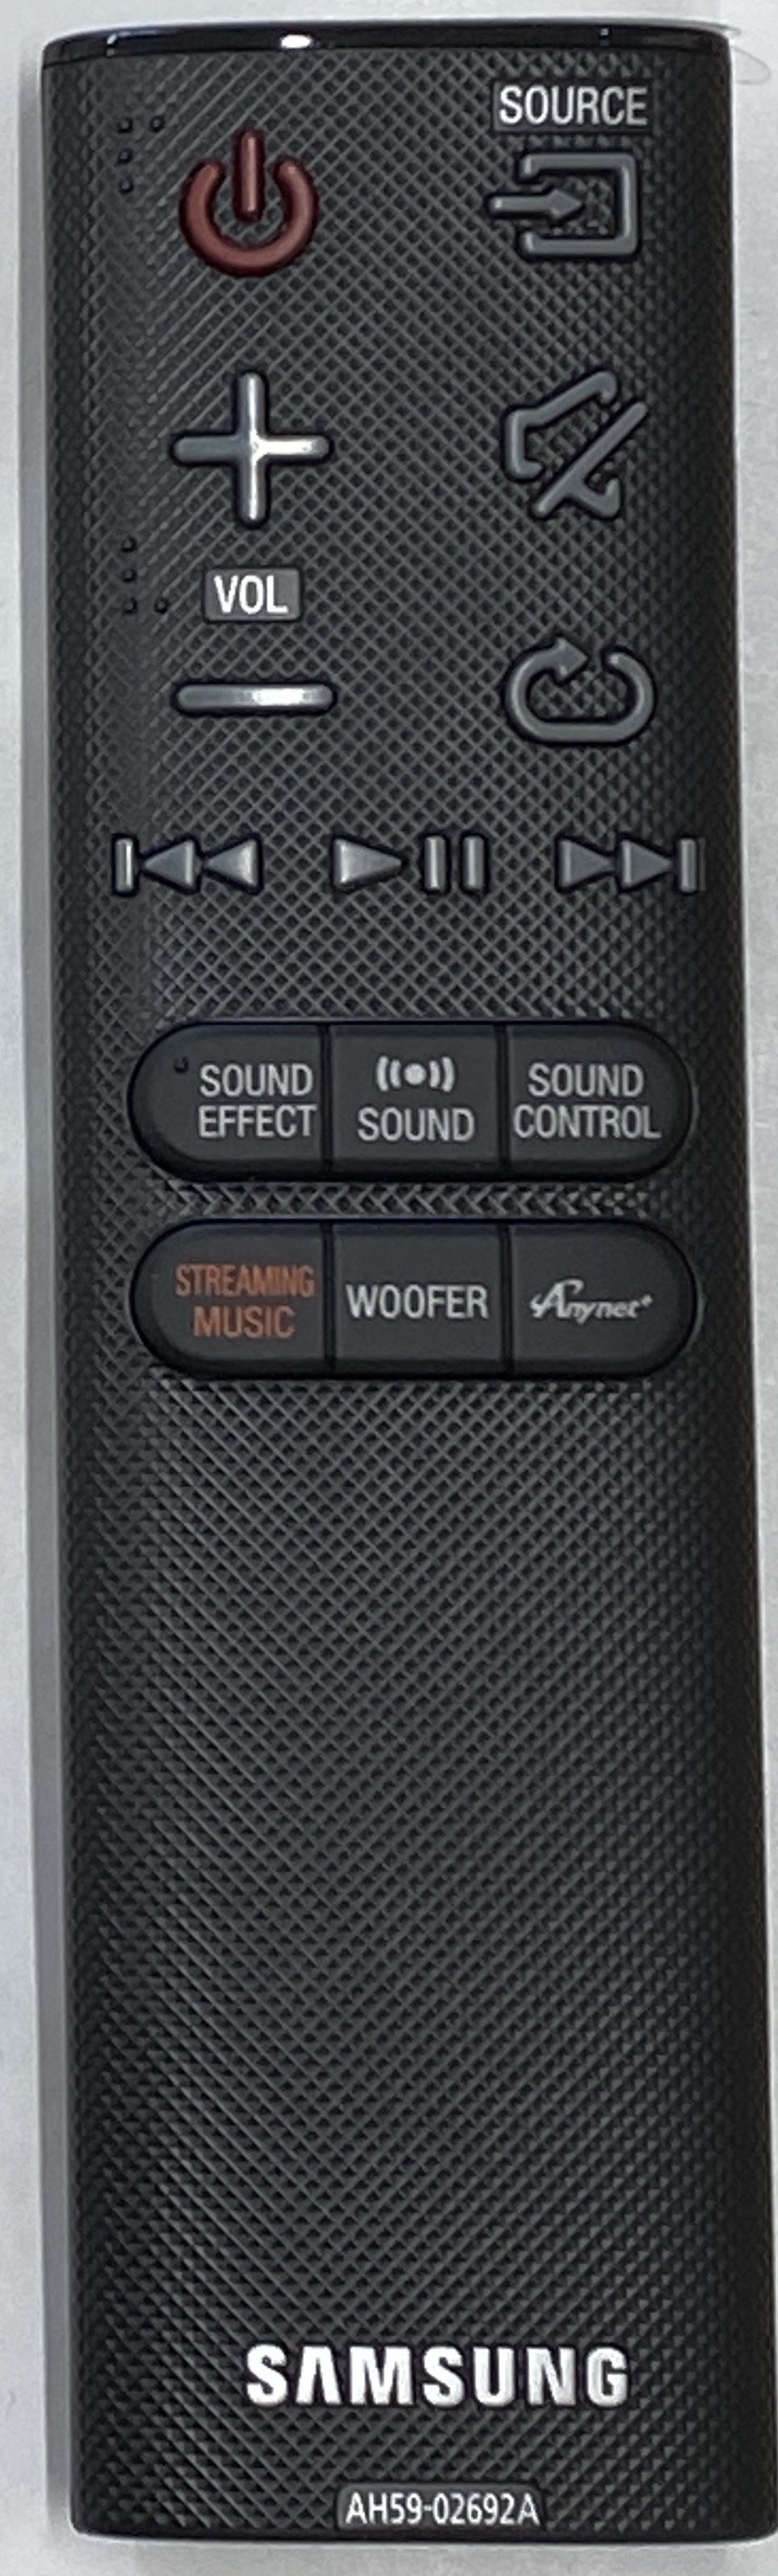 SAMSUNG HW-J6510/XE Remote Control Original 